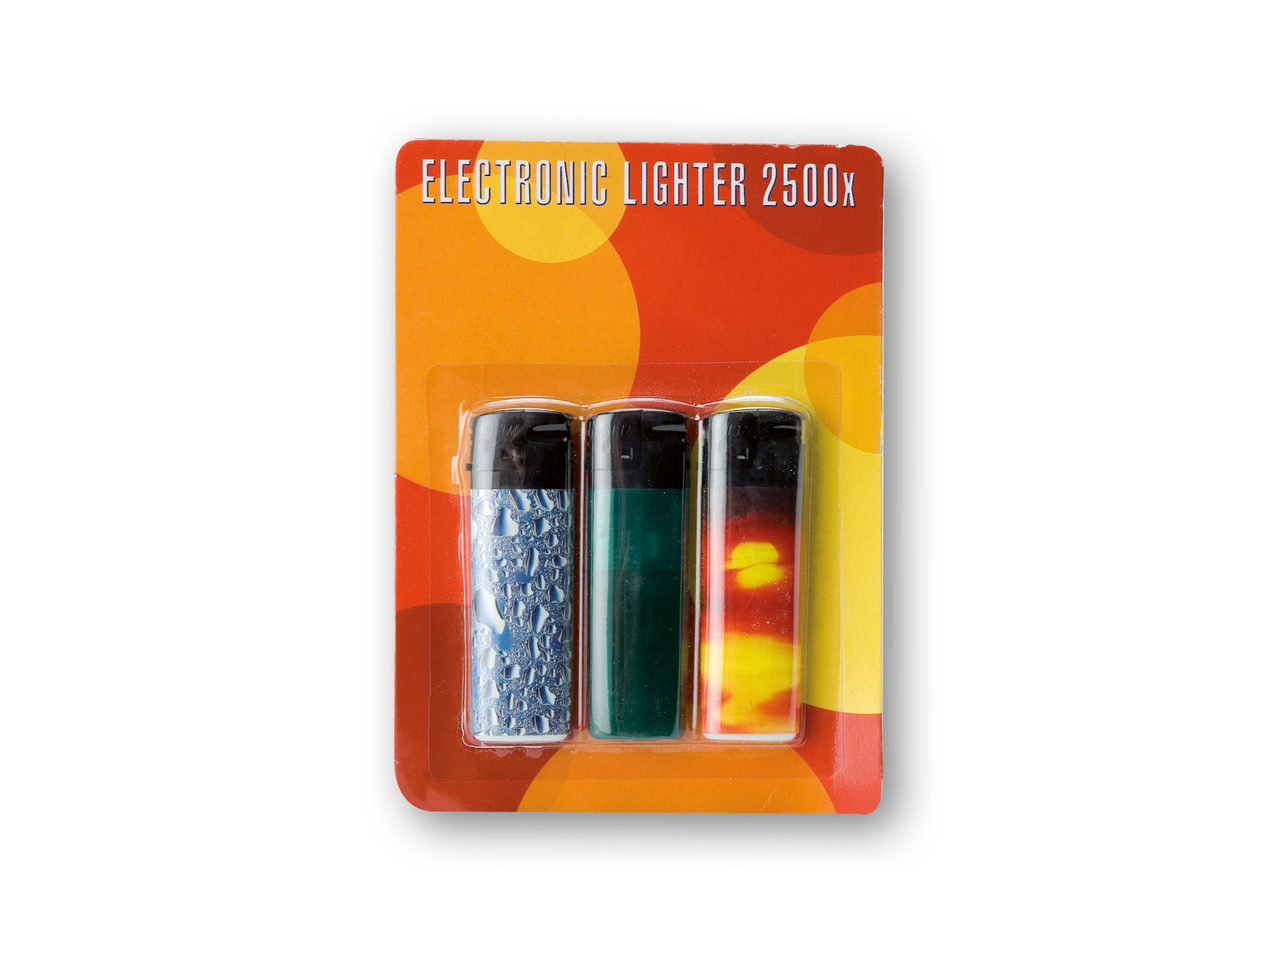 Elektronisk lighter